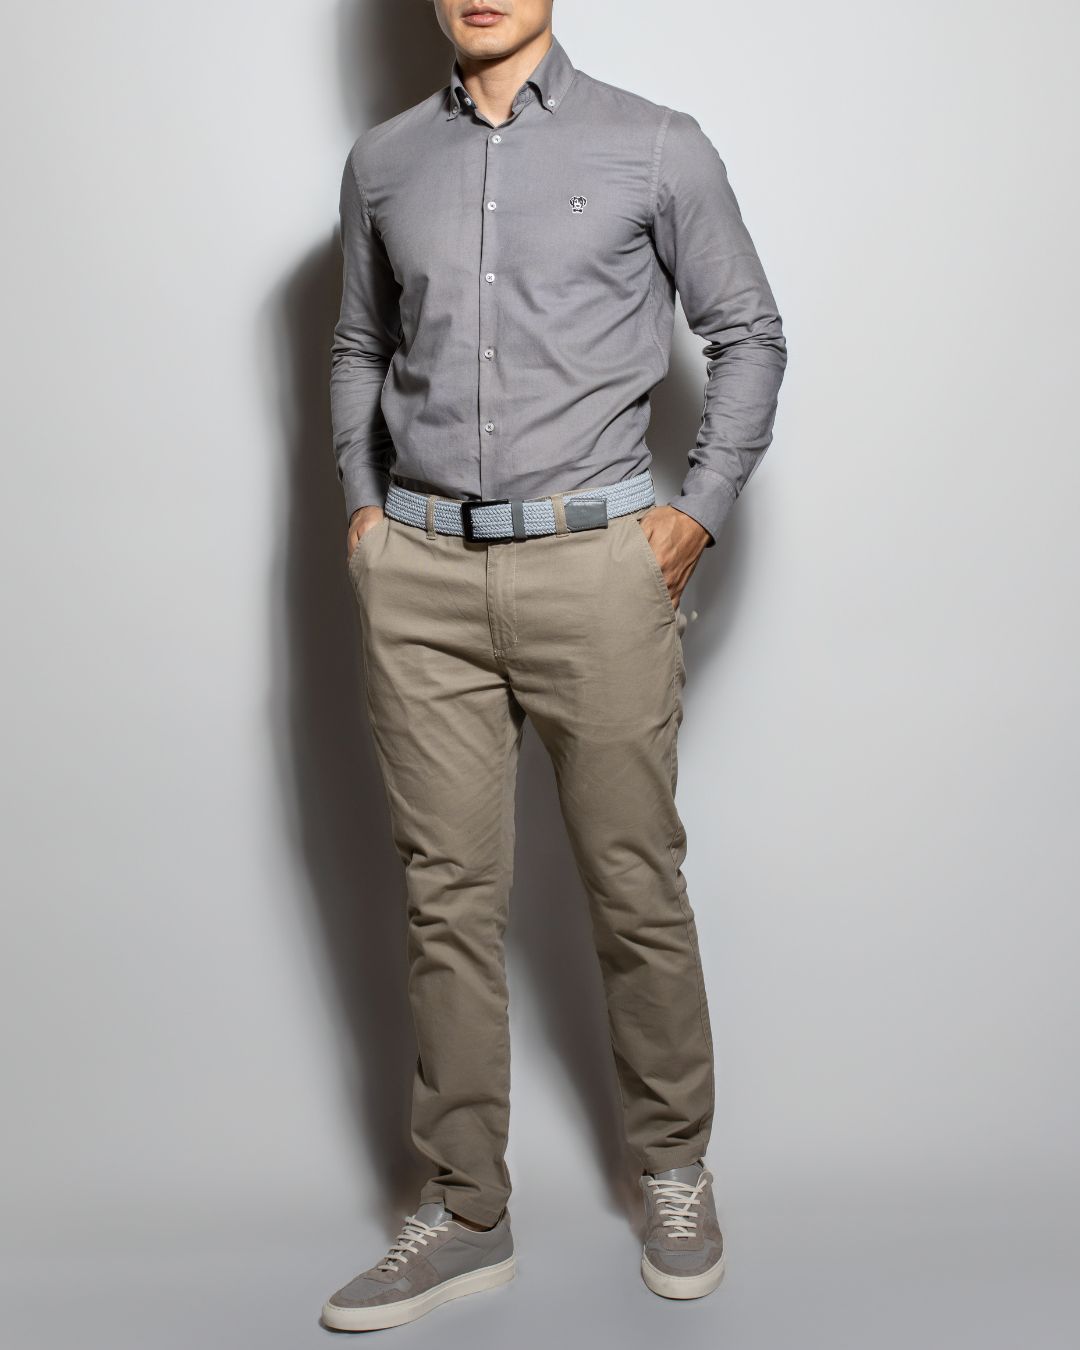 Outfit Camisa Antimanchas + Cinturón elástico + Pantalón formal 35% OFF